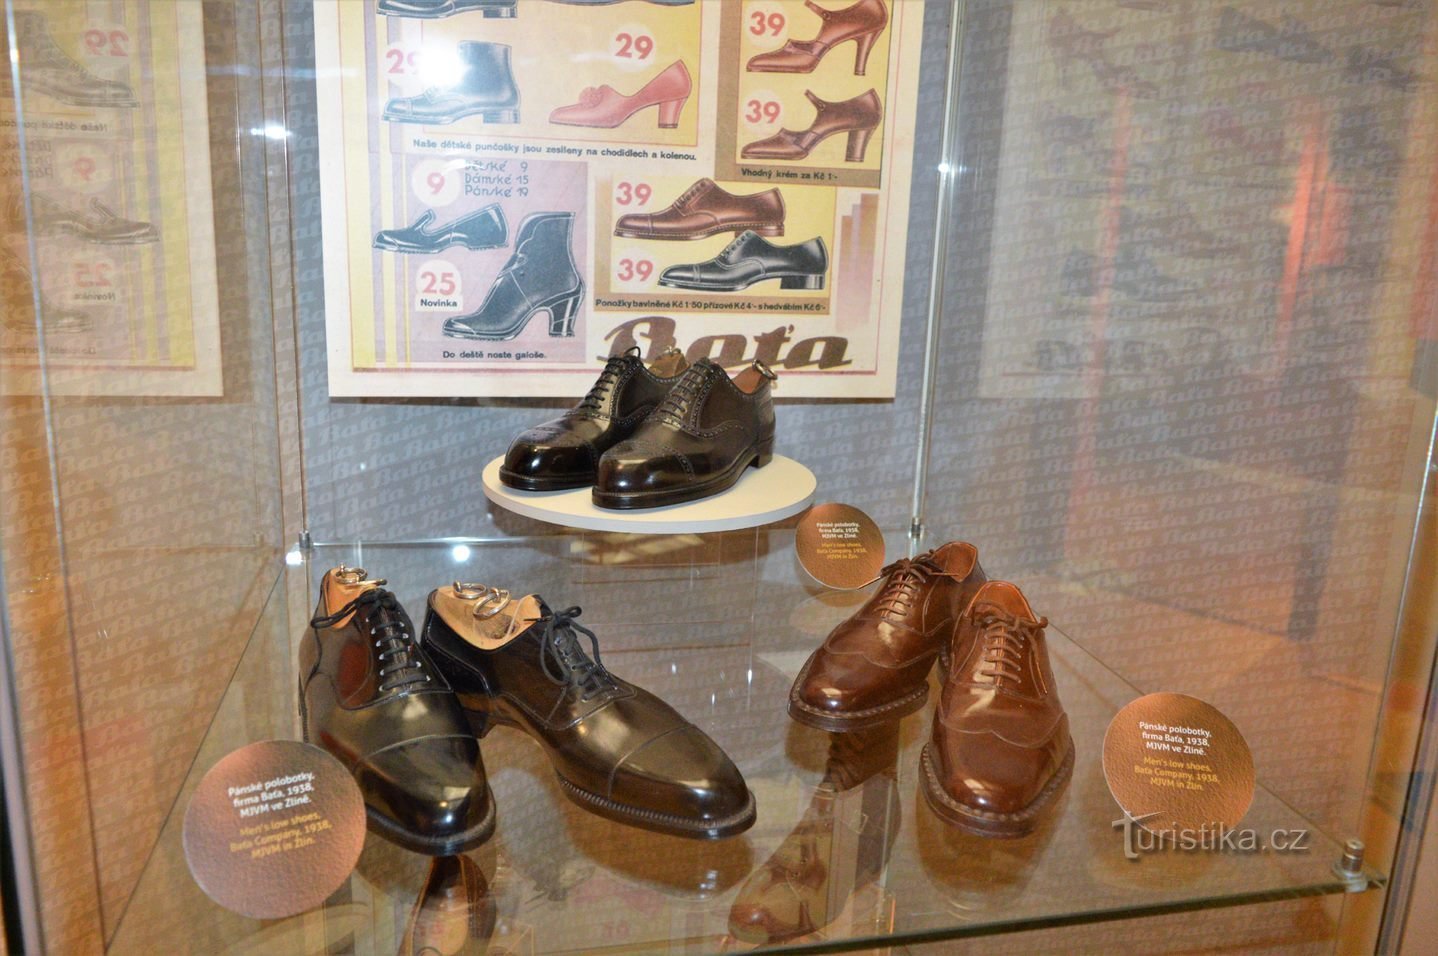 Exposición de la exposición Baťa: ¡zapatos para todos!